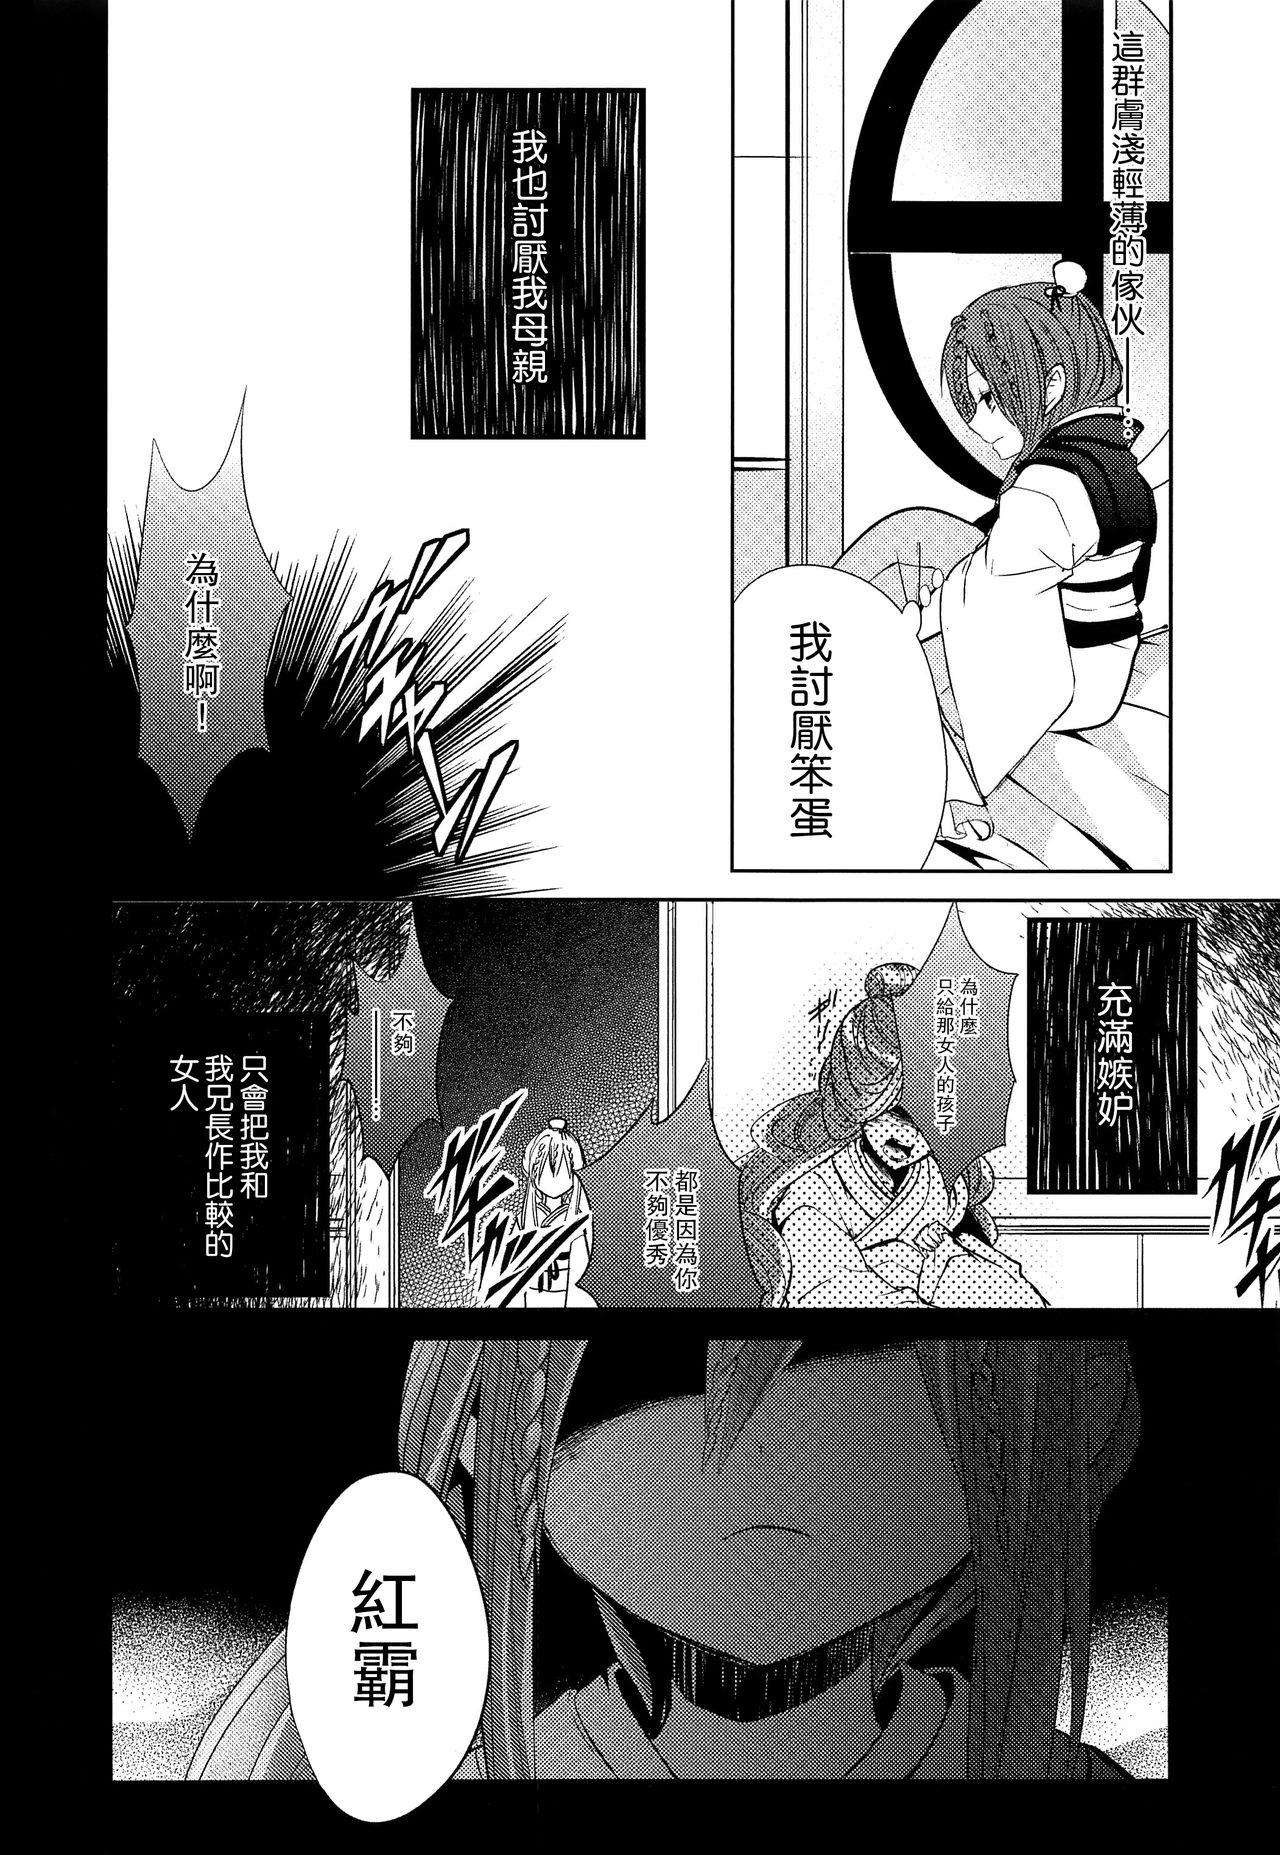 Rebolando Tsuki ga Mieru Yoru ni - Magi the labyrinth of magic Solo Female - Page 7